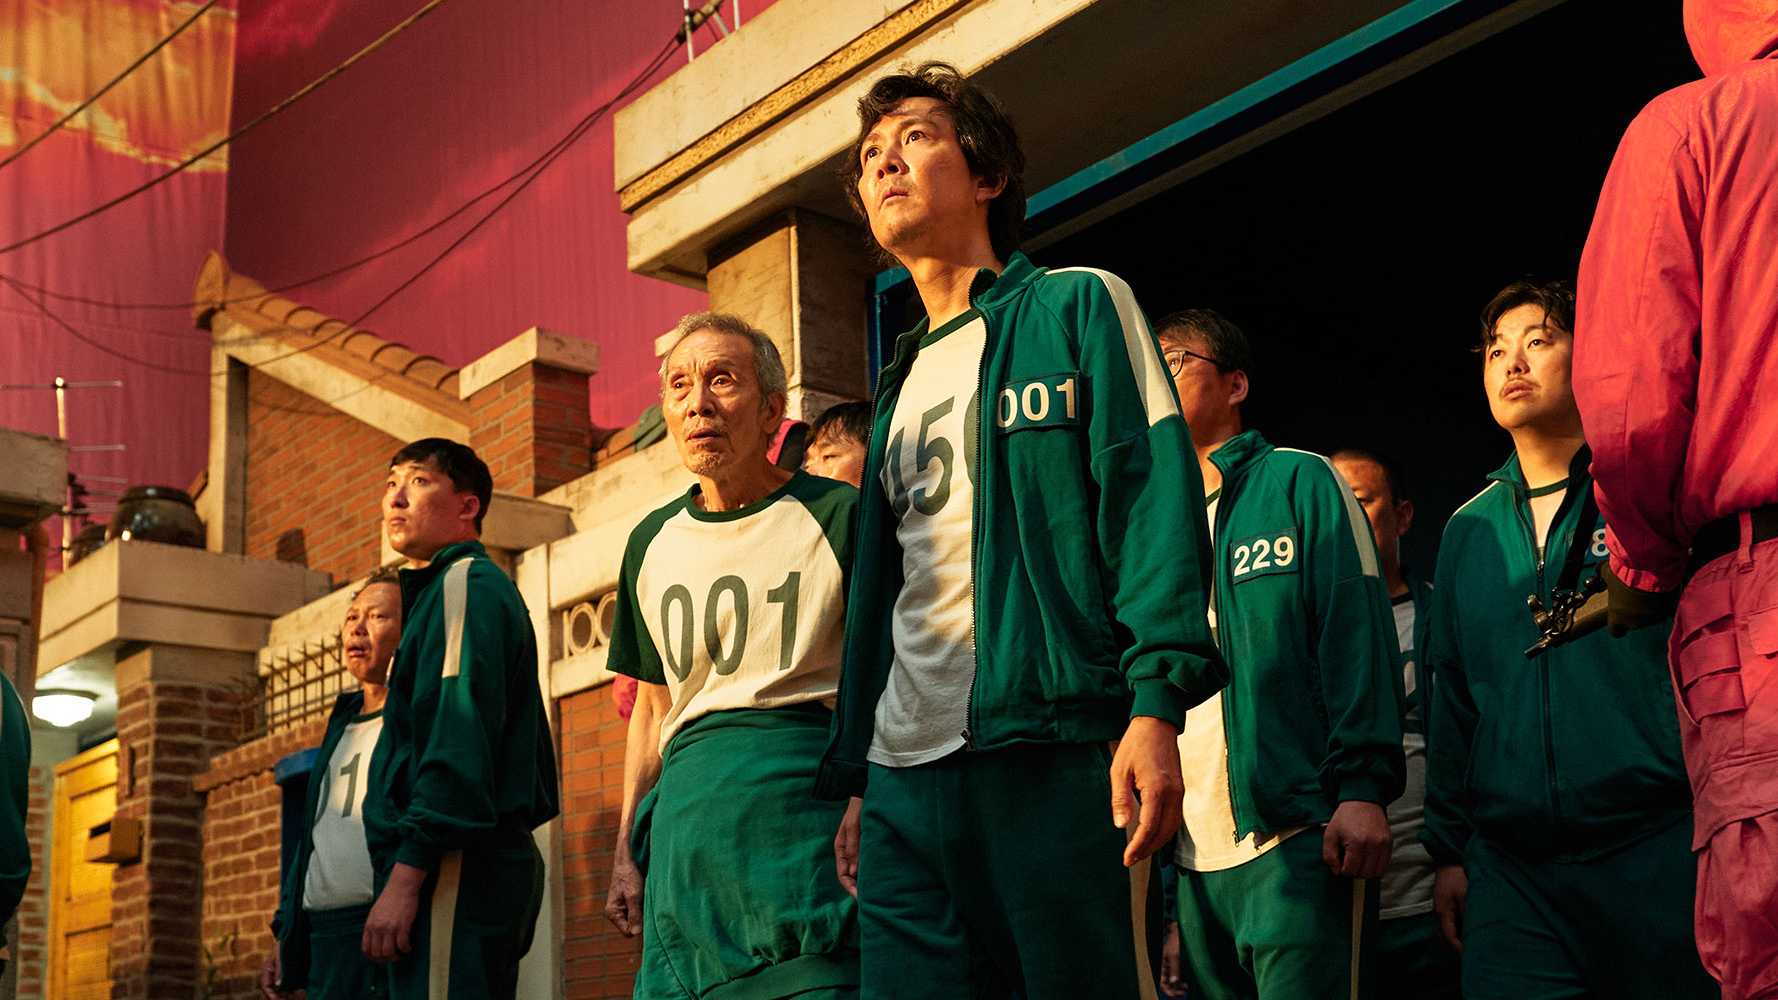 Série sul-coreana 'Round 6', da Netflix, é sucesso mundial